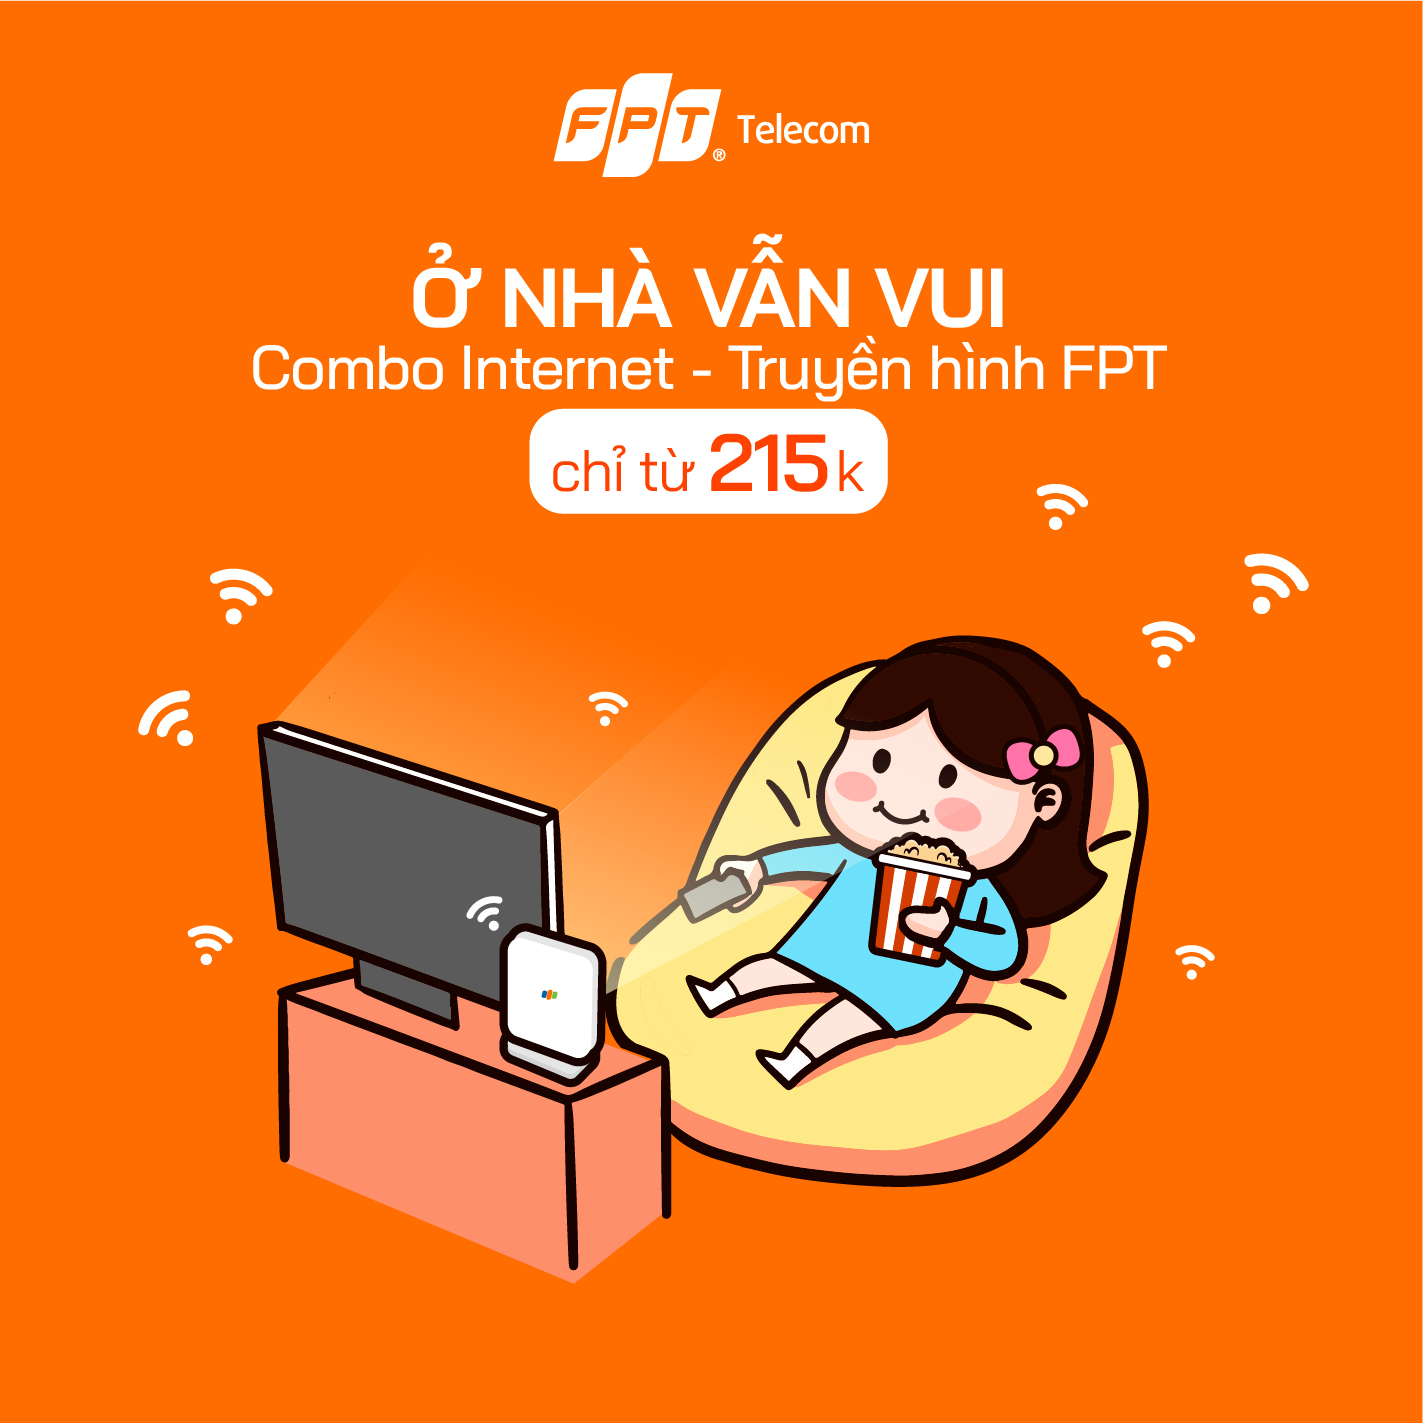 Lắp mạng FPT tại Bắc Ninh- Nâng cấp băng thông gấp đôi với giá cước chỉ từ 185k